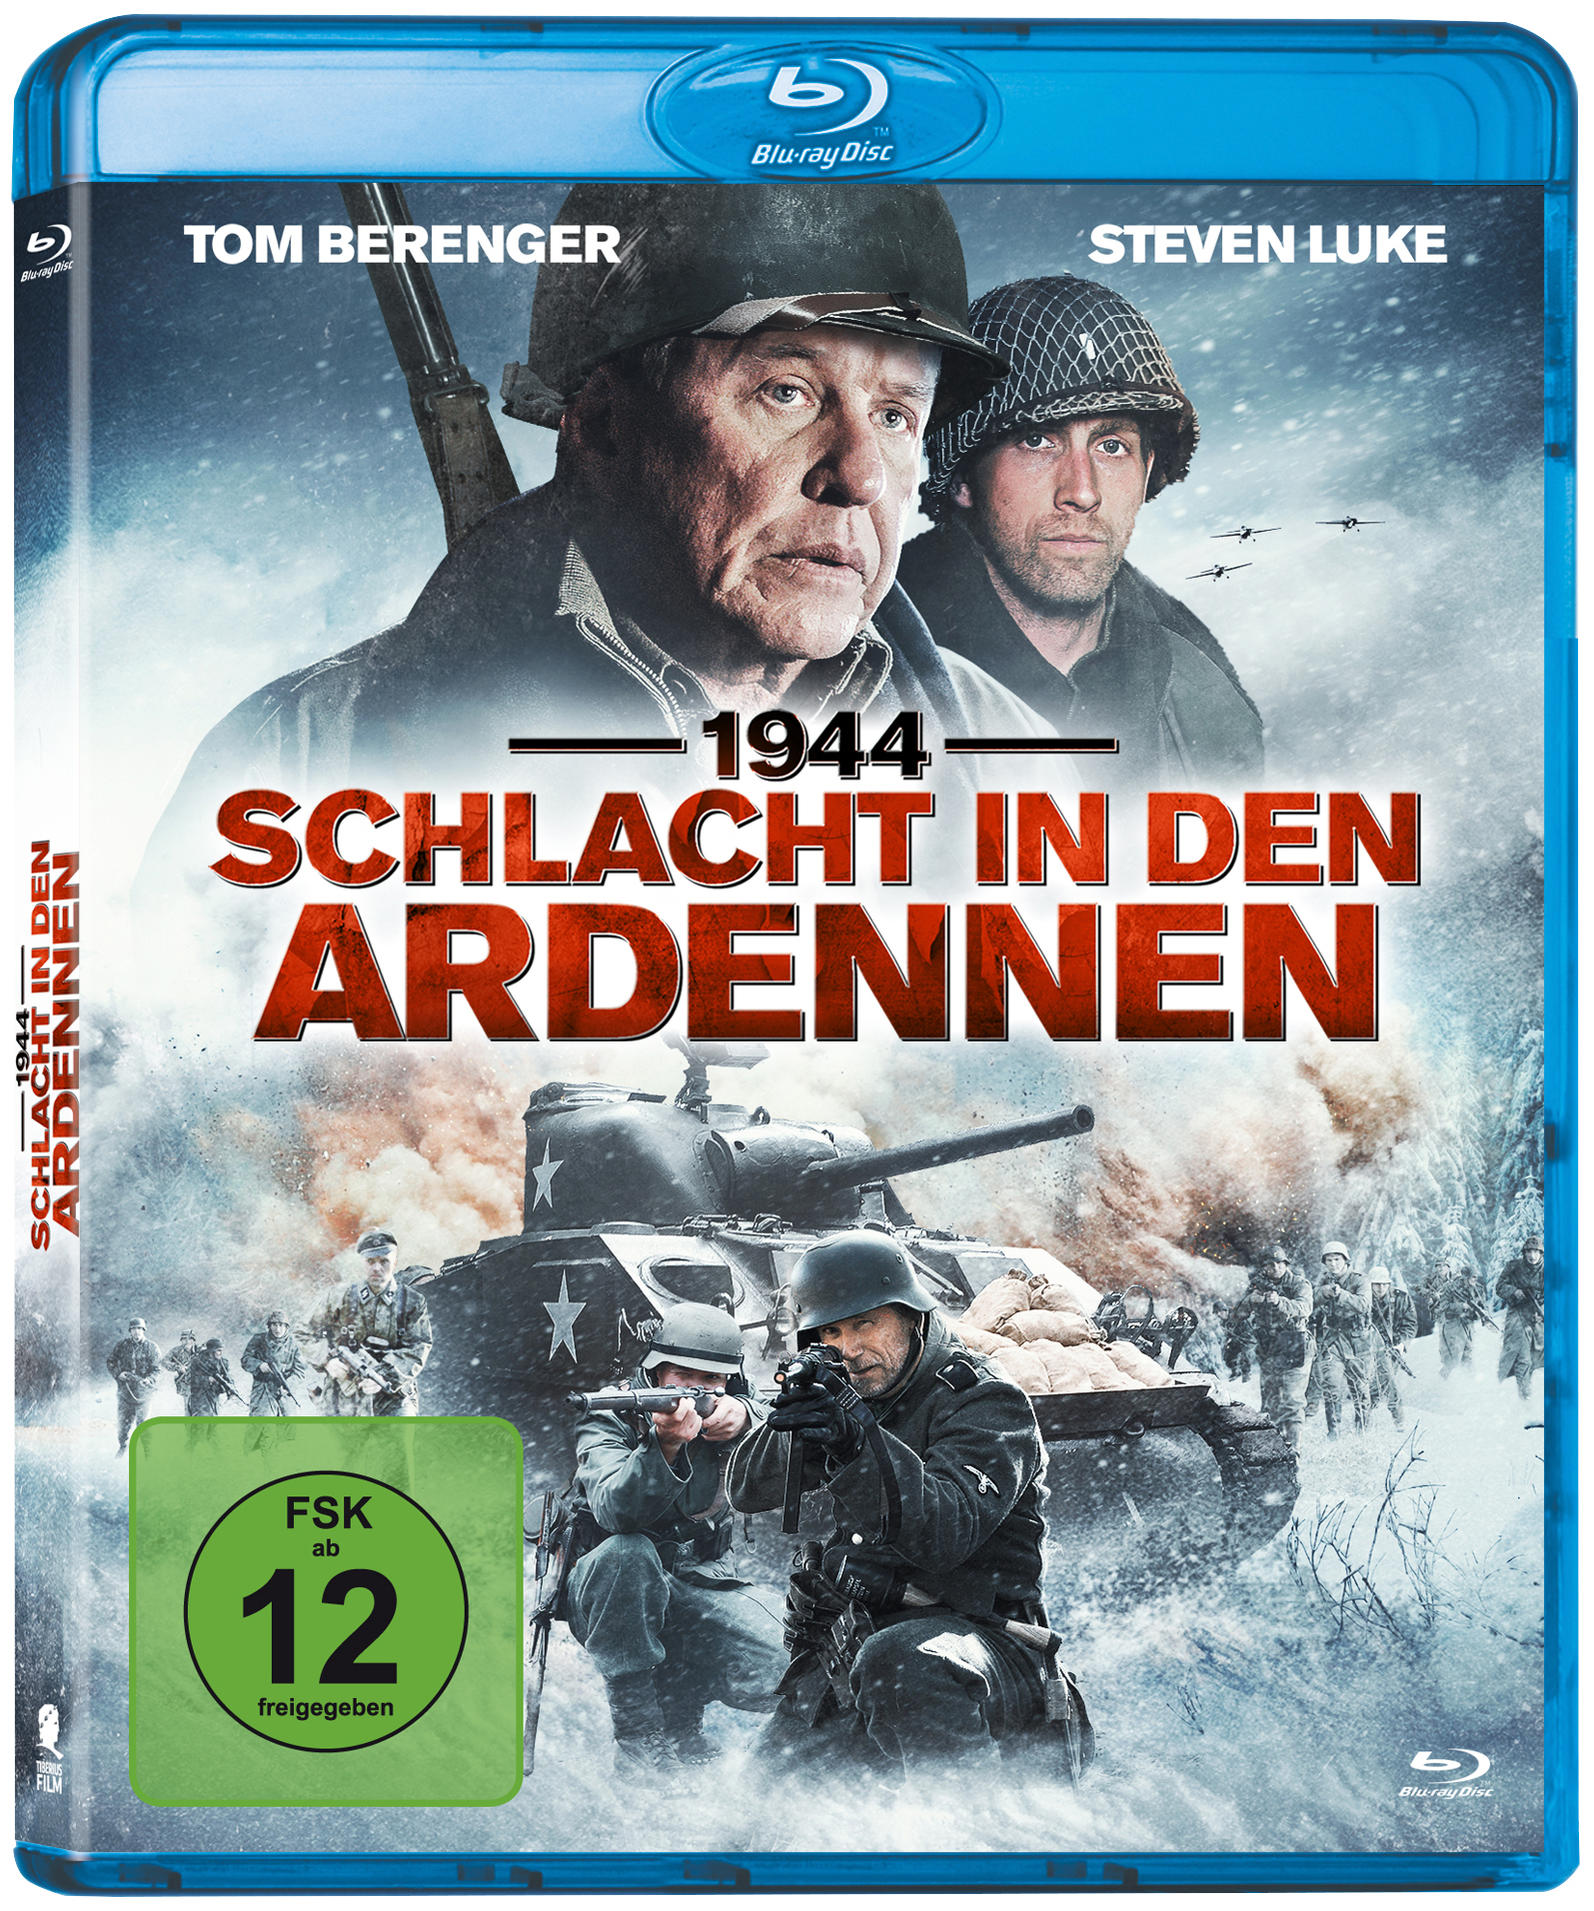 Ardennen Blu-ray in den Schlacht